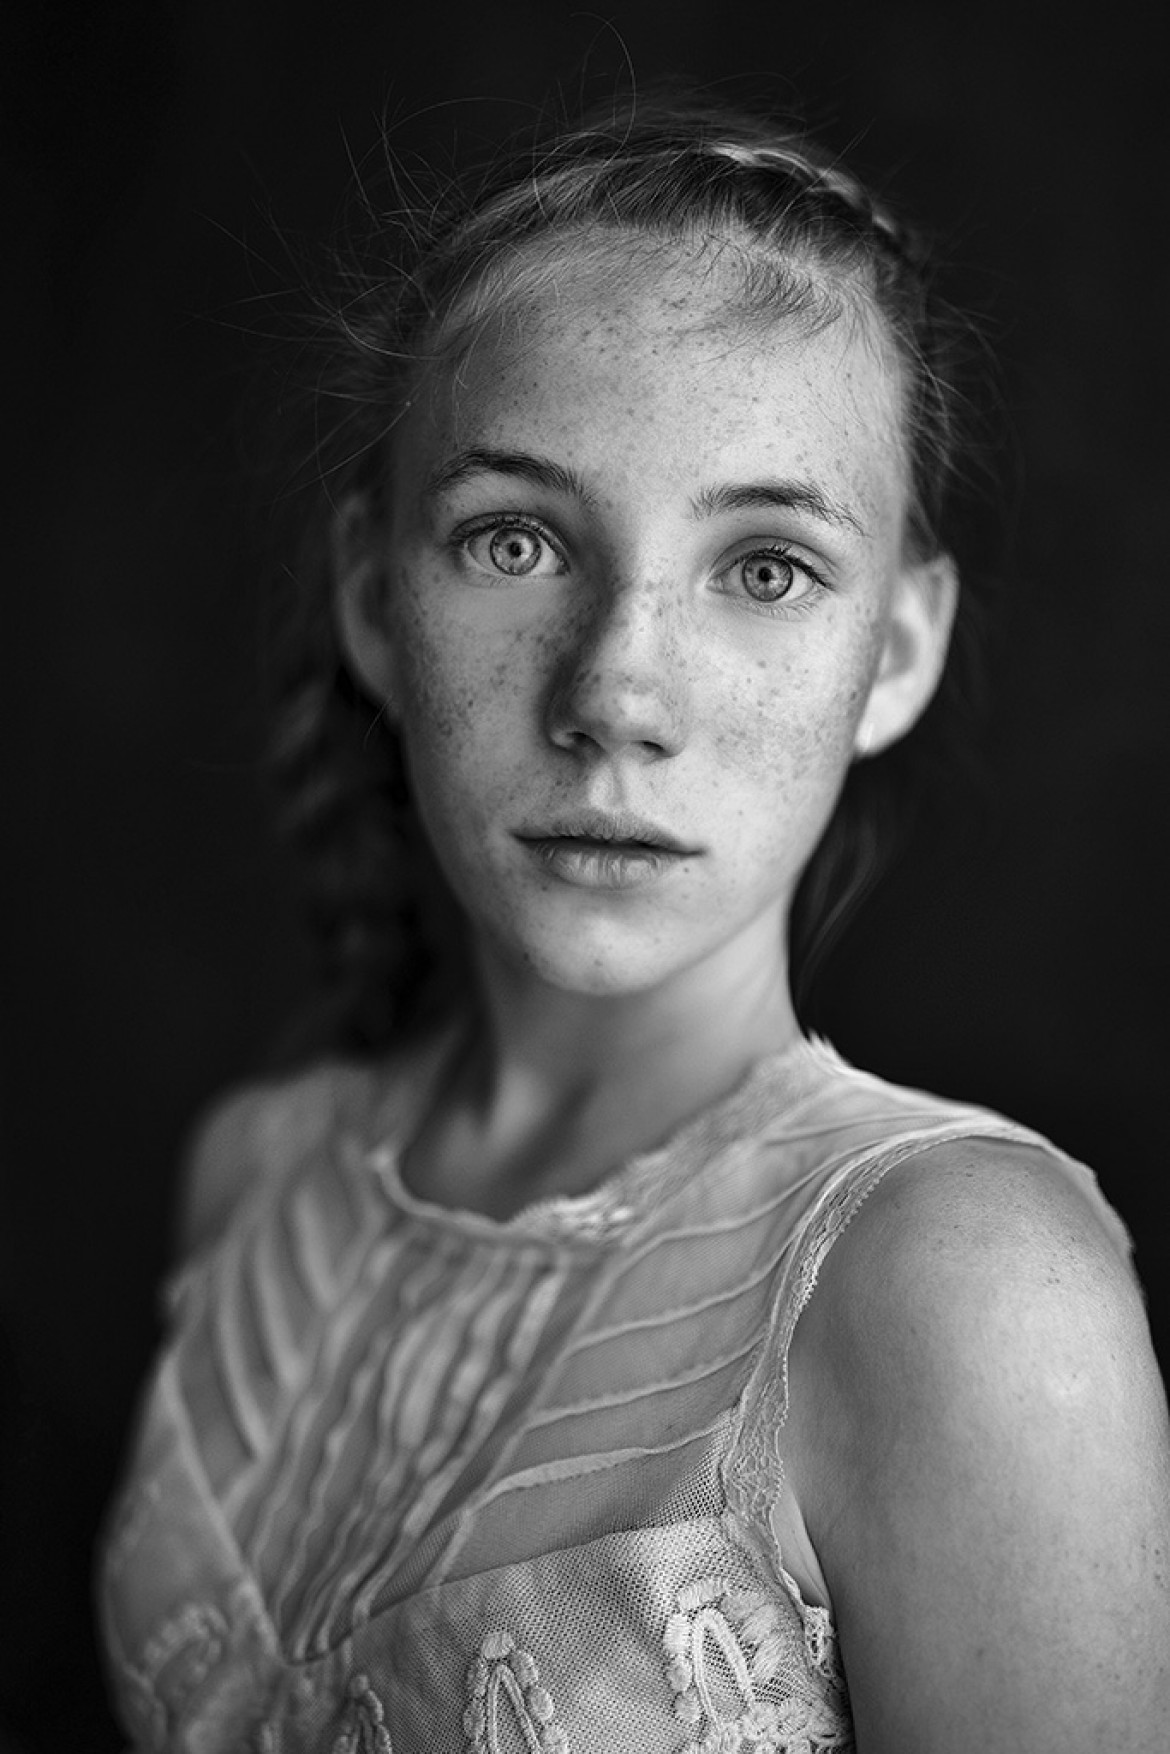 fot. Maja Pajączkowska, "Ania's Freckles", wyróżnienie w kategorii Portrait